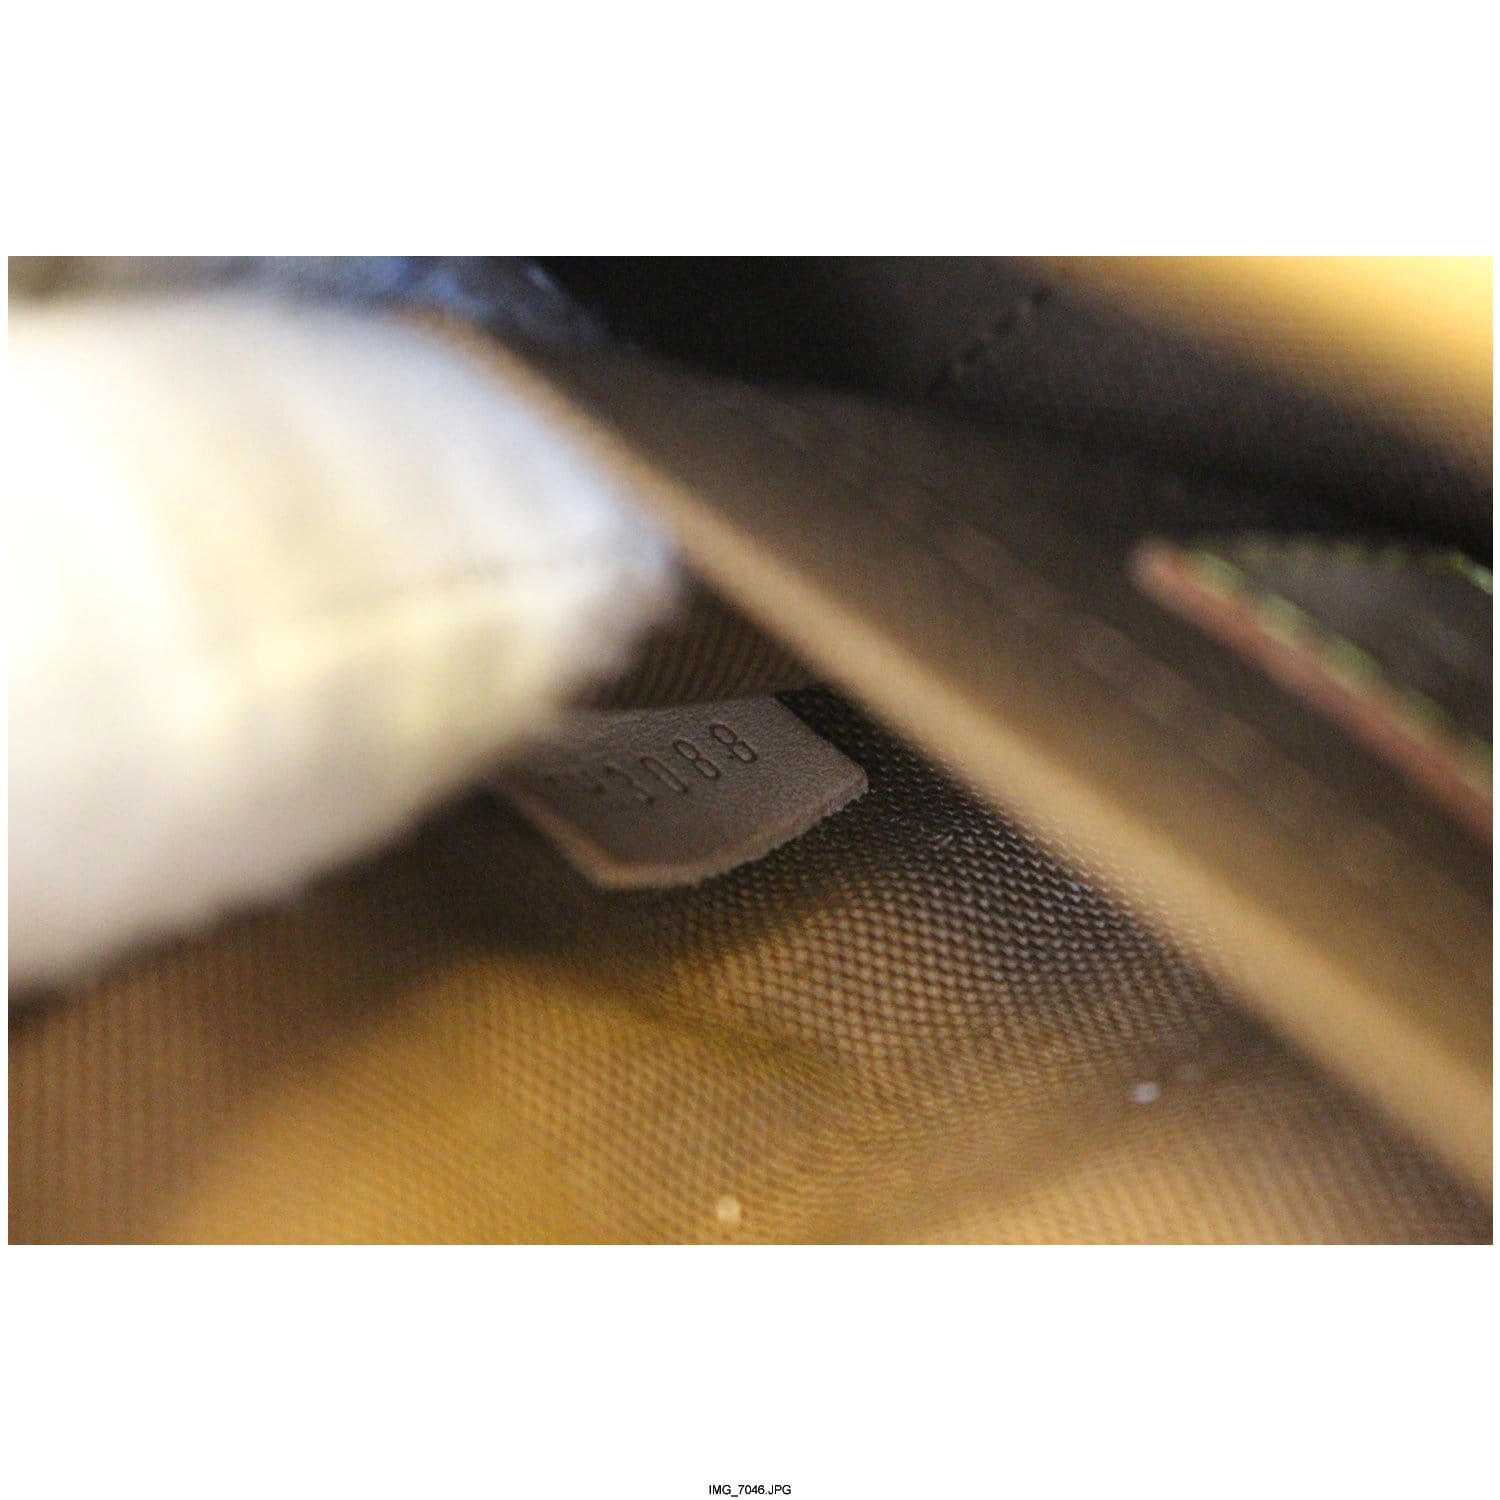 Louis Vuitton Sologne Shoulder bag 323824